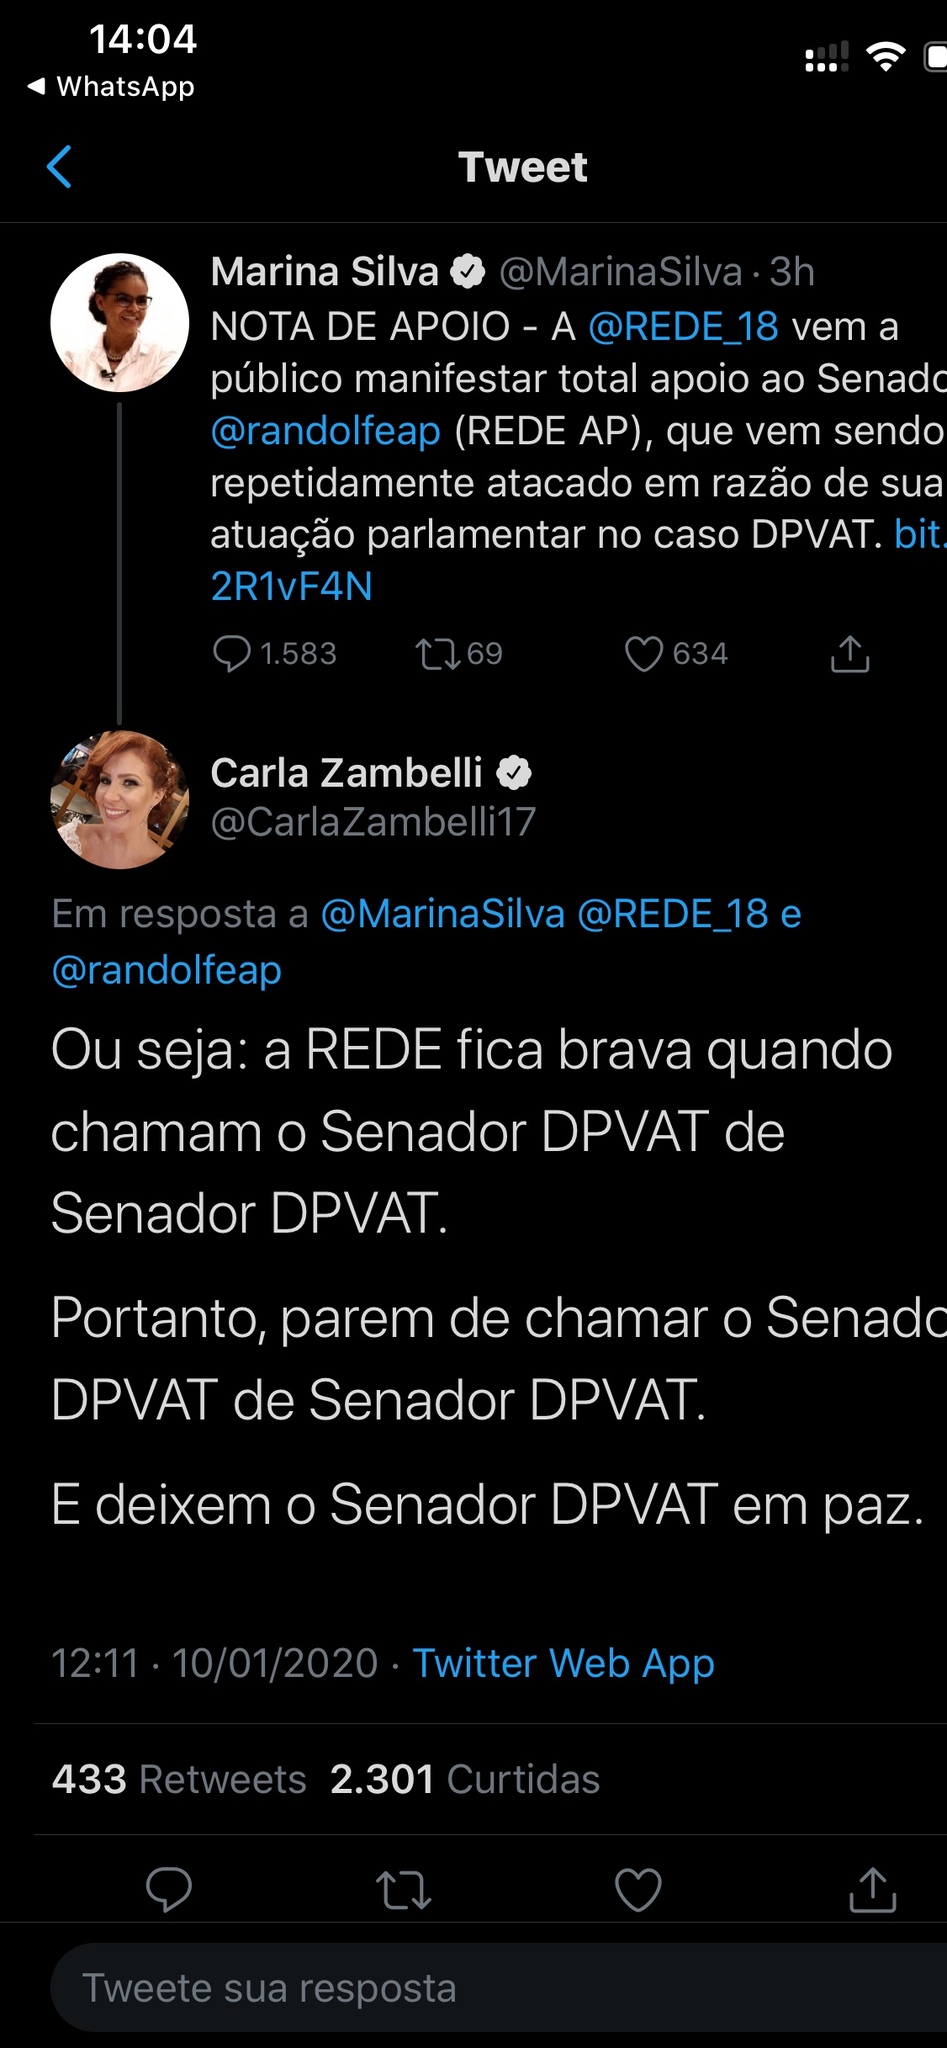 A turminha da quinta série é muito madura para a política brasileira  - meme